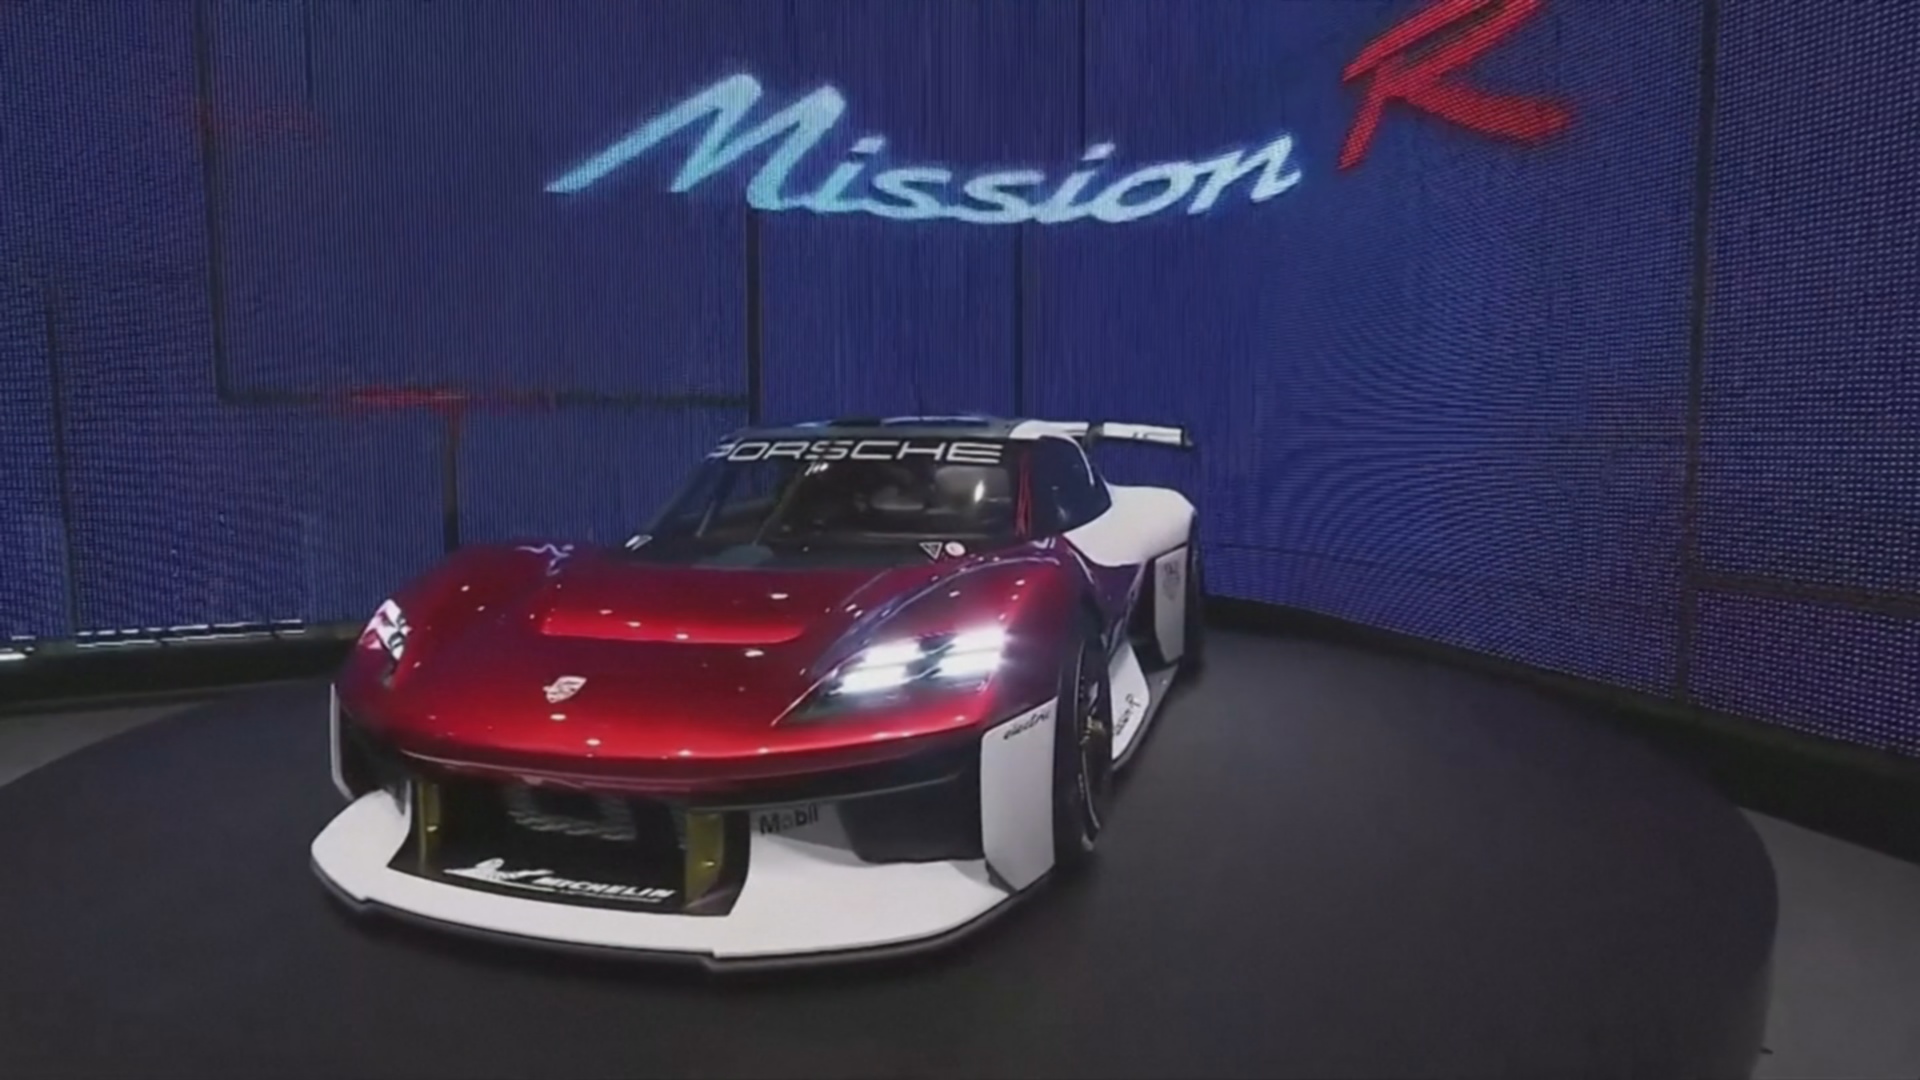 Автошоу в Мюнхене: Porsche представила электрический спорткар Mission R